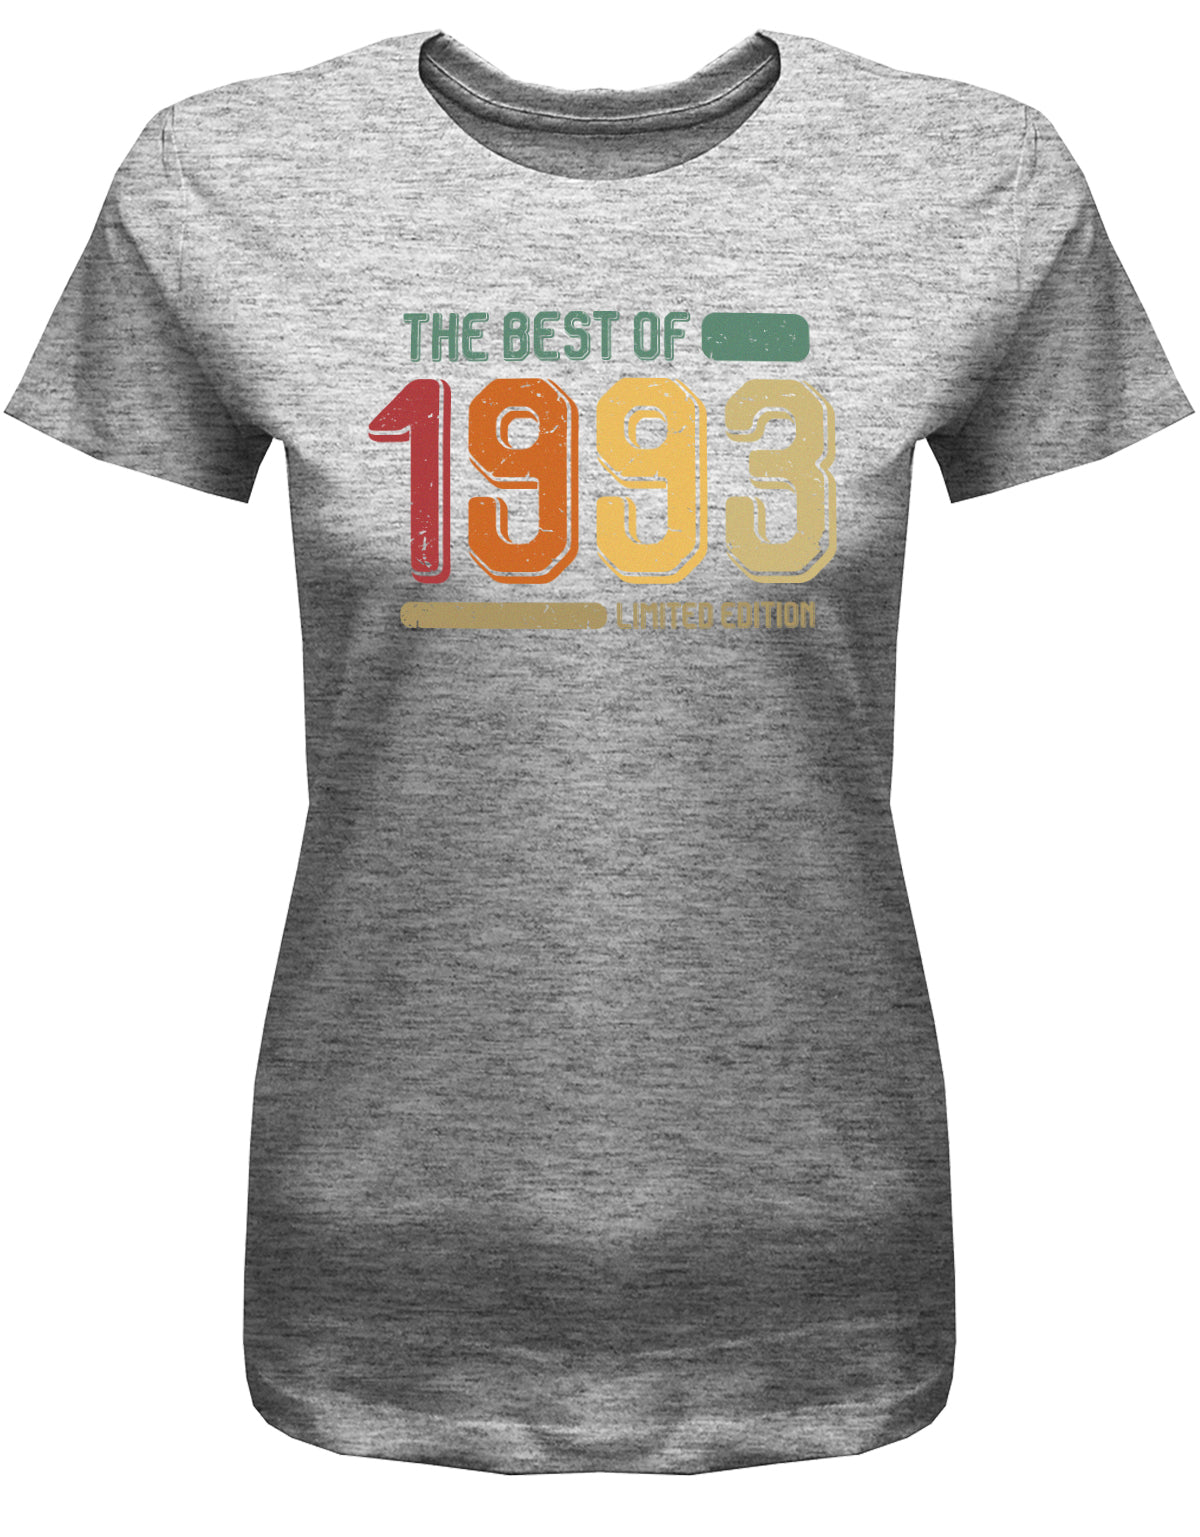 Lustiges T-Shirt zum 30. Geburtstag für die Frau Bedruckt mit: The Best of 1993 Limited Edition Retro Vintage ✓ Geschenk zum 30 geburtstag Frau ✓ 1993 geburtstag Frau ✓ 30 Geburtstag tshirt ✓ shirt geburtstag 30 Grau